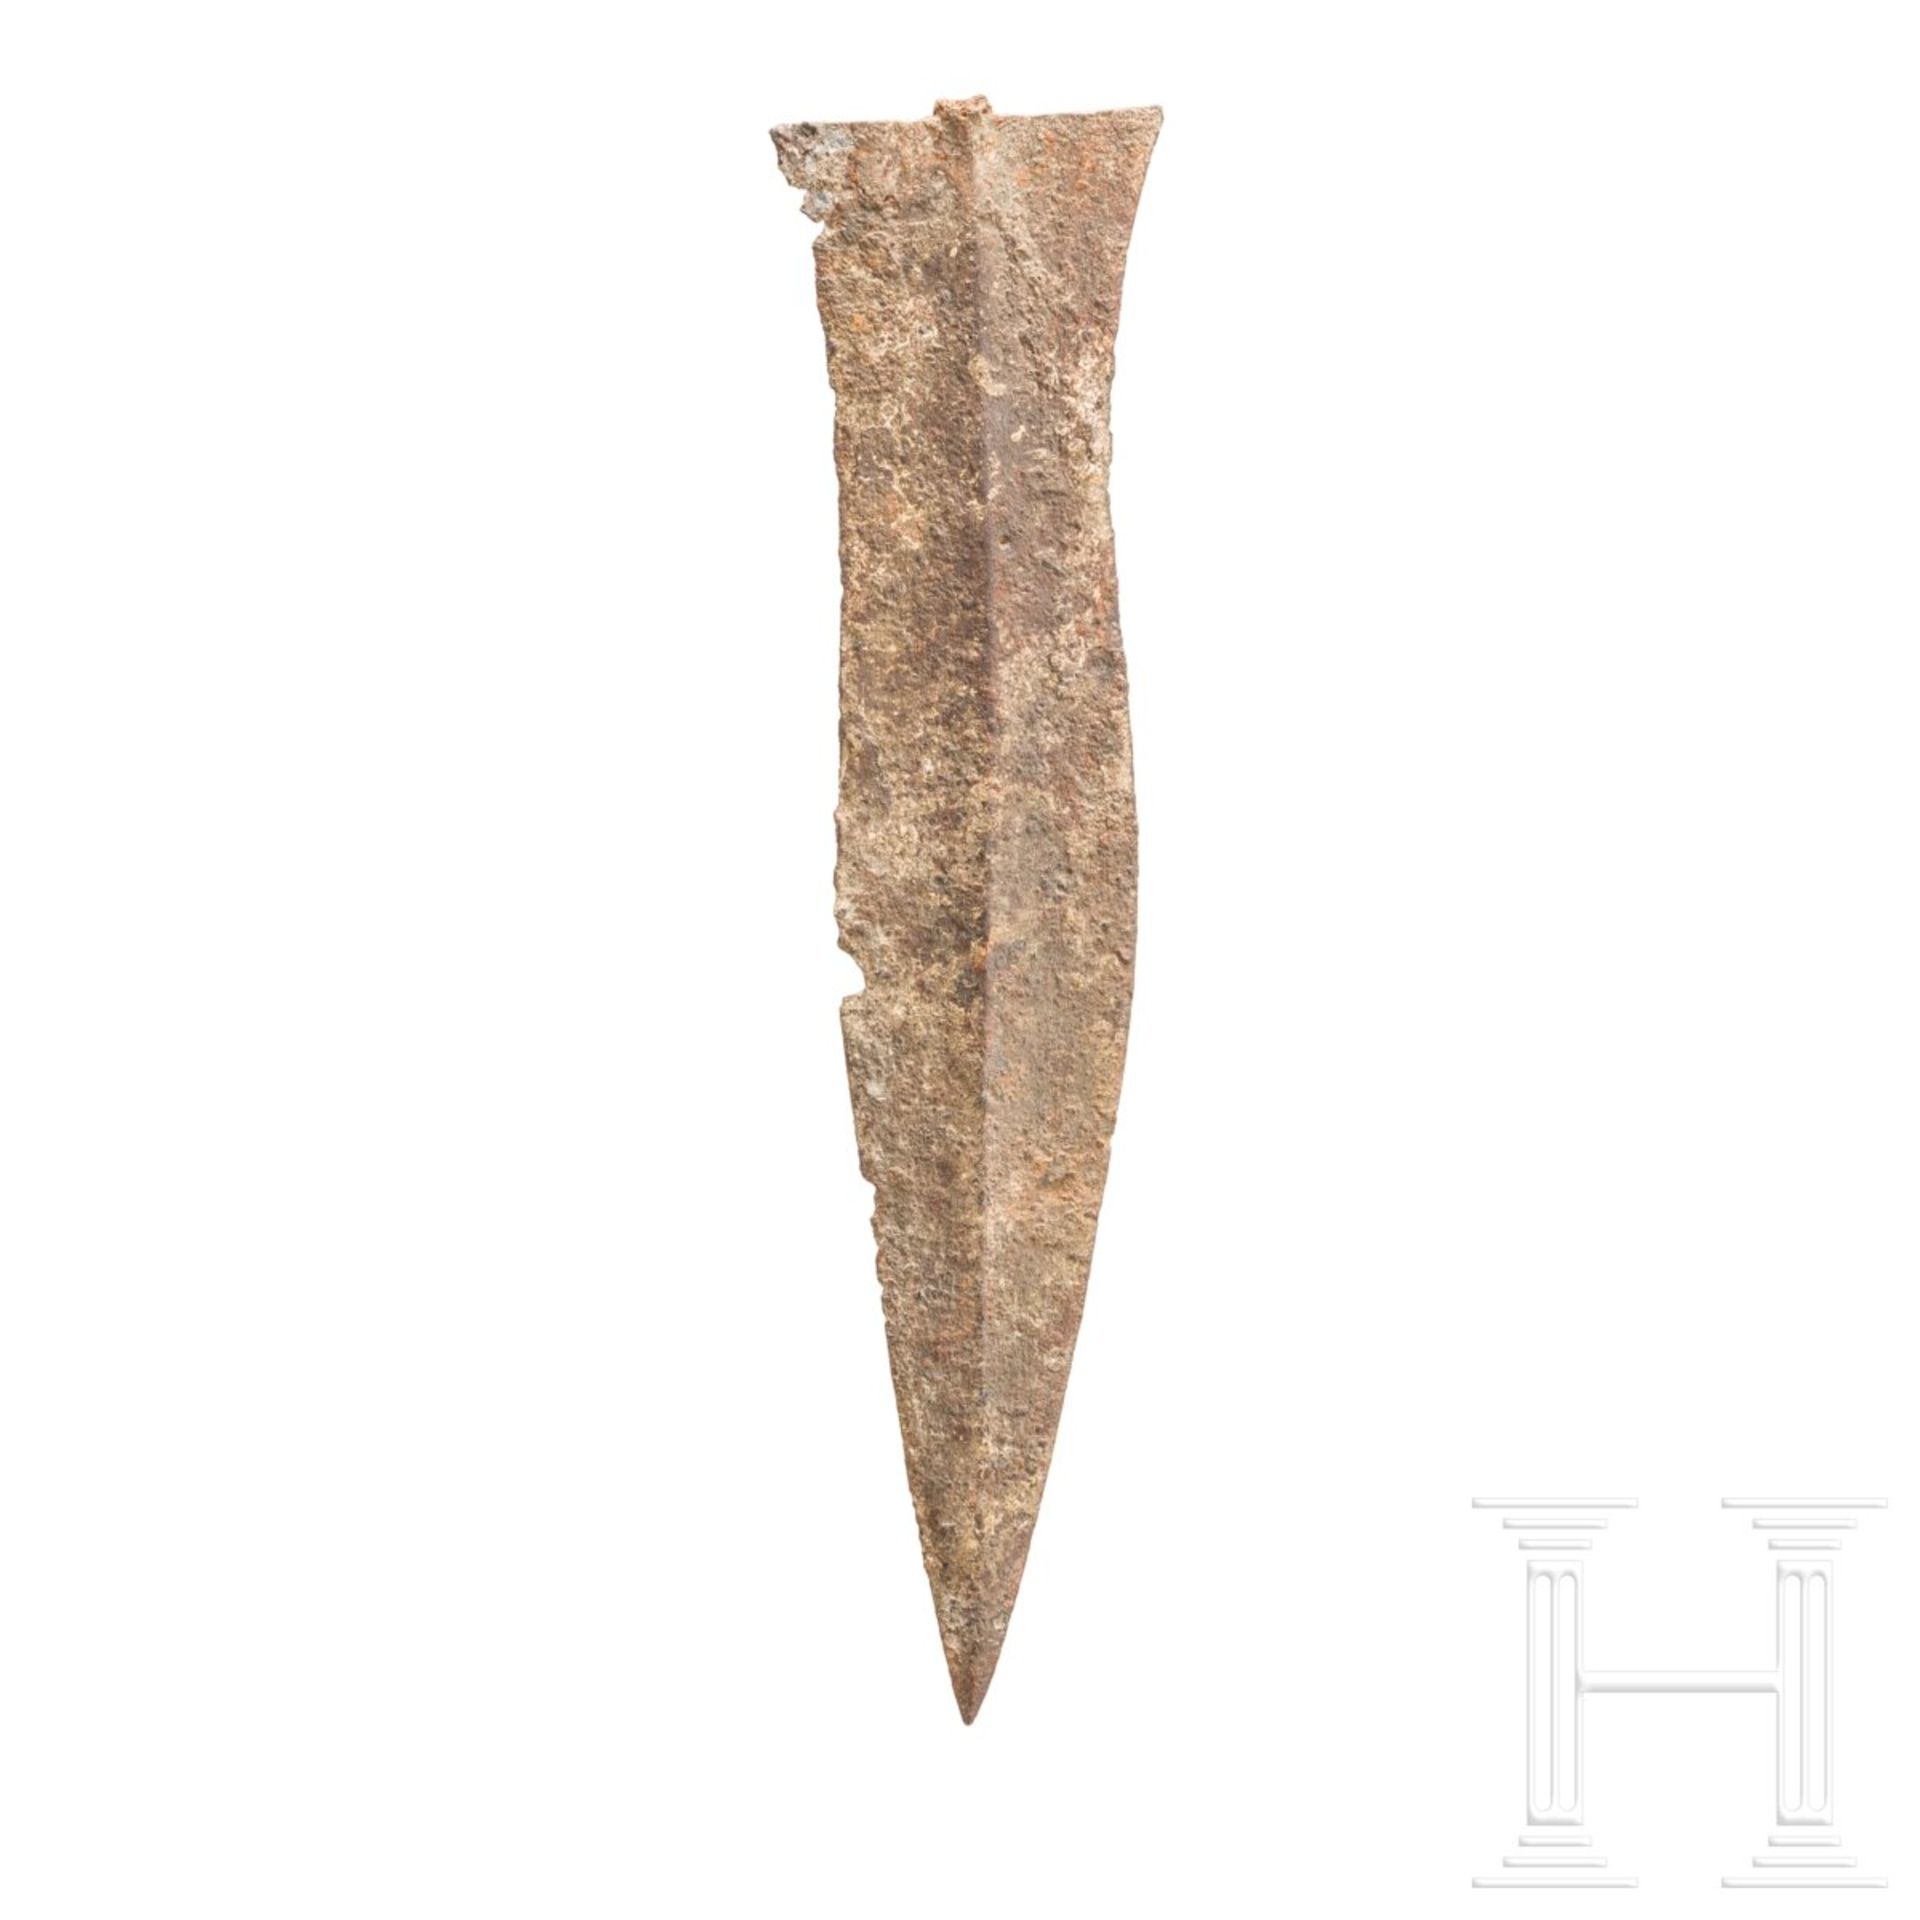 Dolchklinge vom Typ Künzing, römisch, 1. Hälfte - Mitte 3. Jhdt. n. Chr. - Bild 2 aus 3